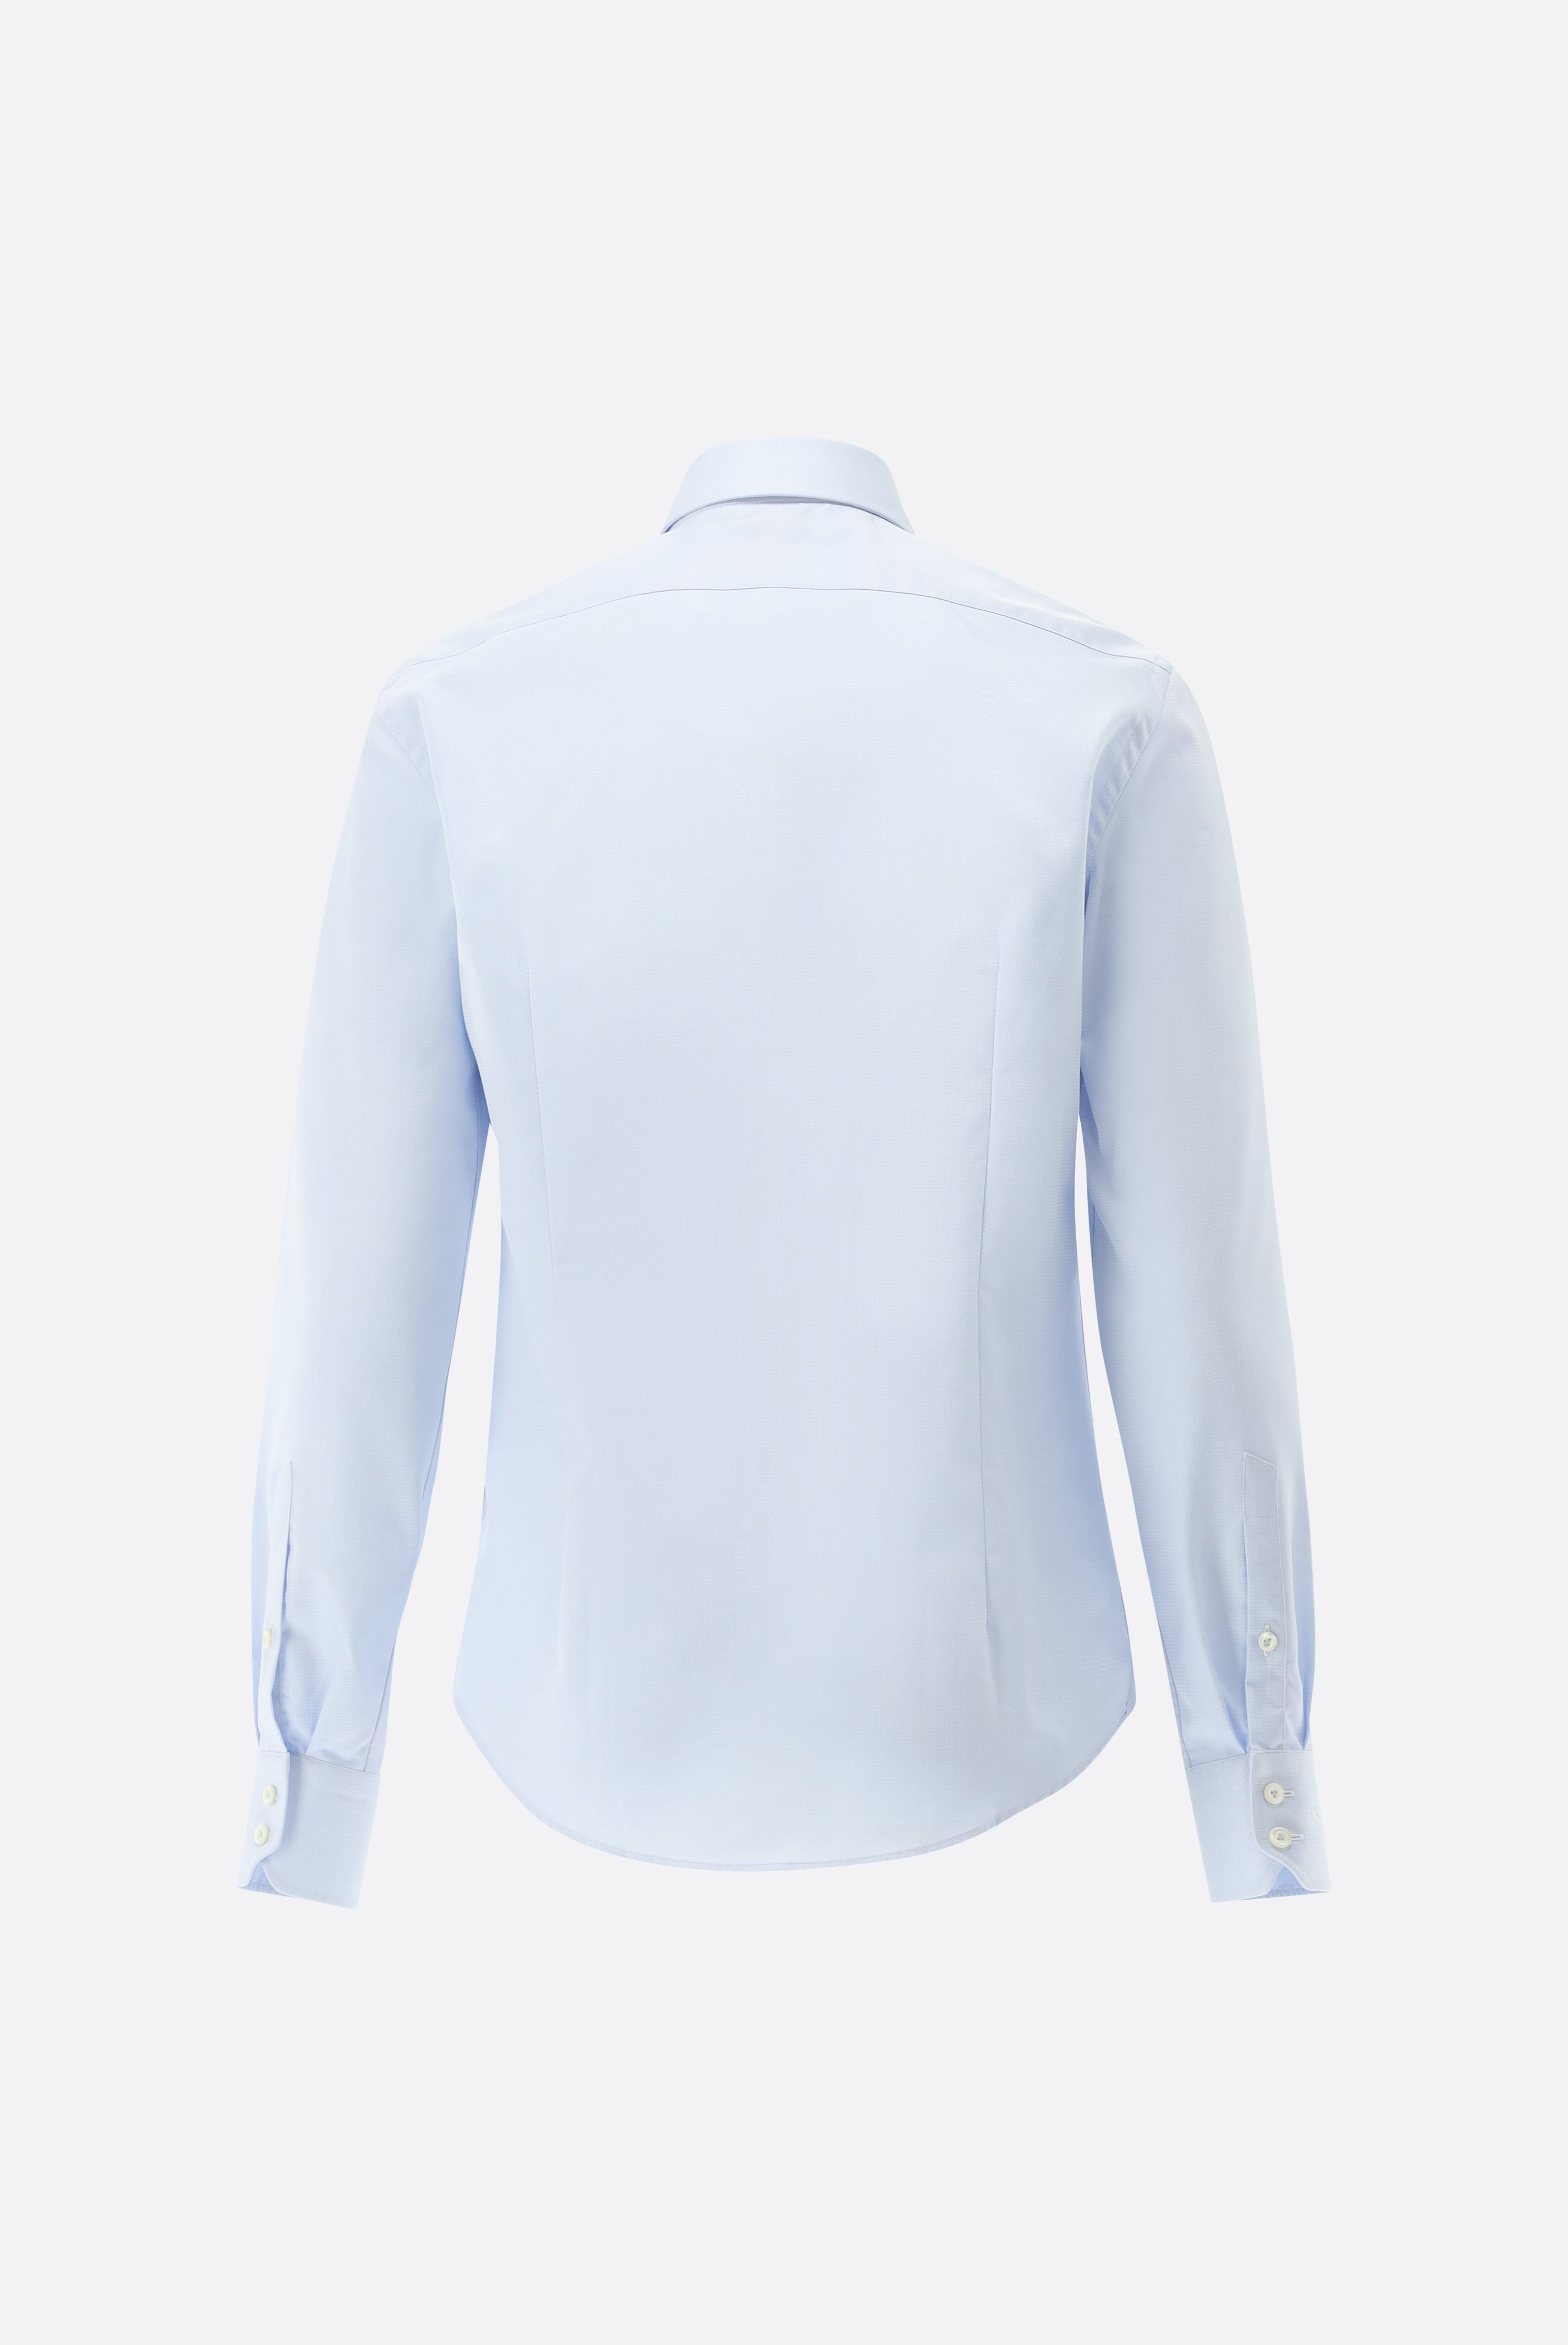 Bügelleichte Hemden+Bügelfreies Twil Hemd mit Struktur Slim Fit+20.2019.BQ.150301.720.38